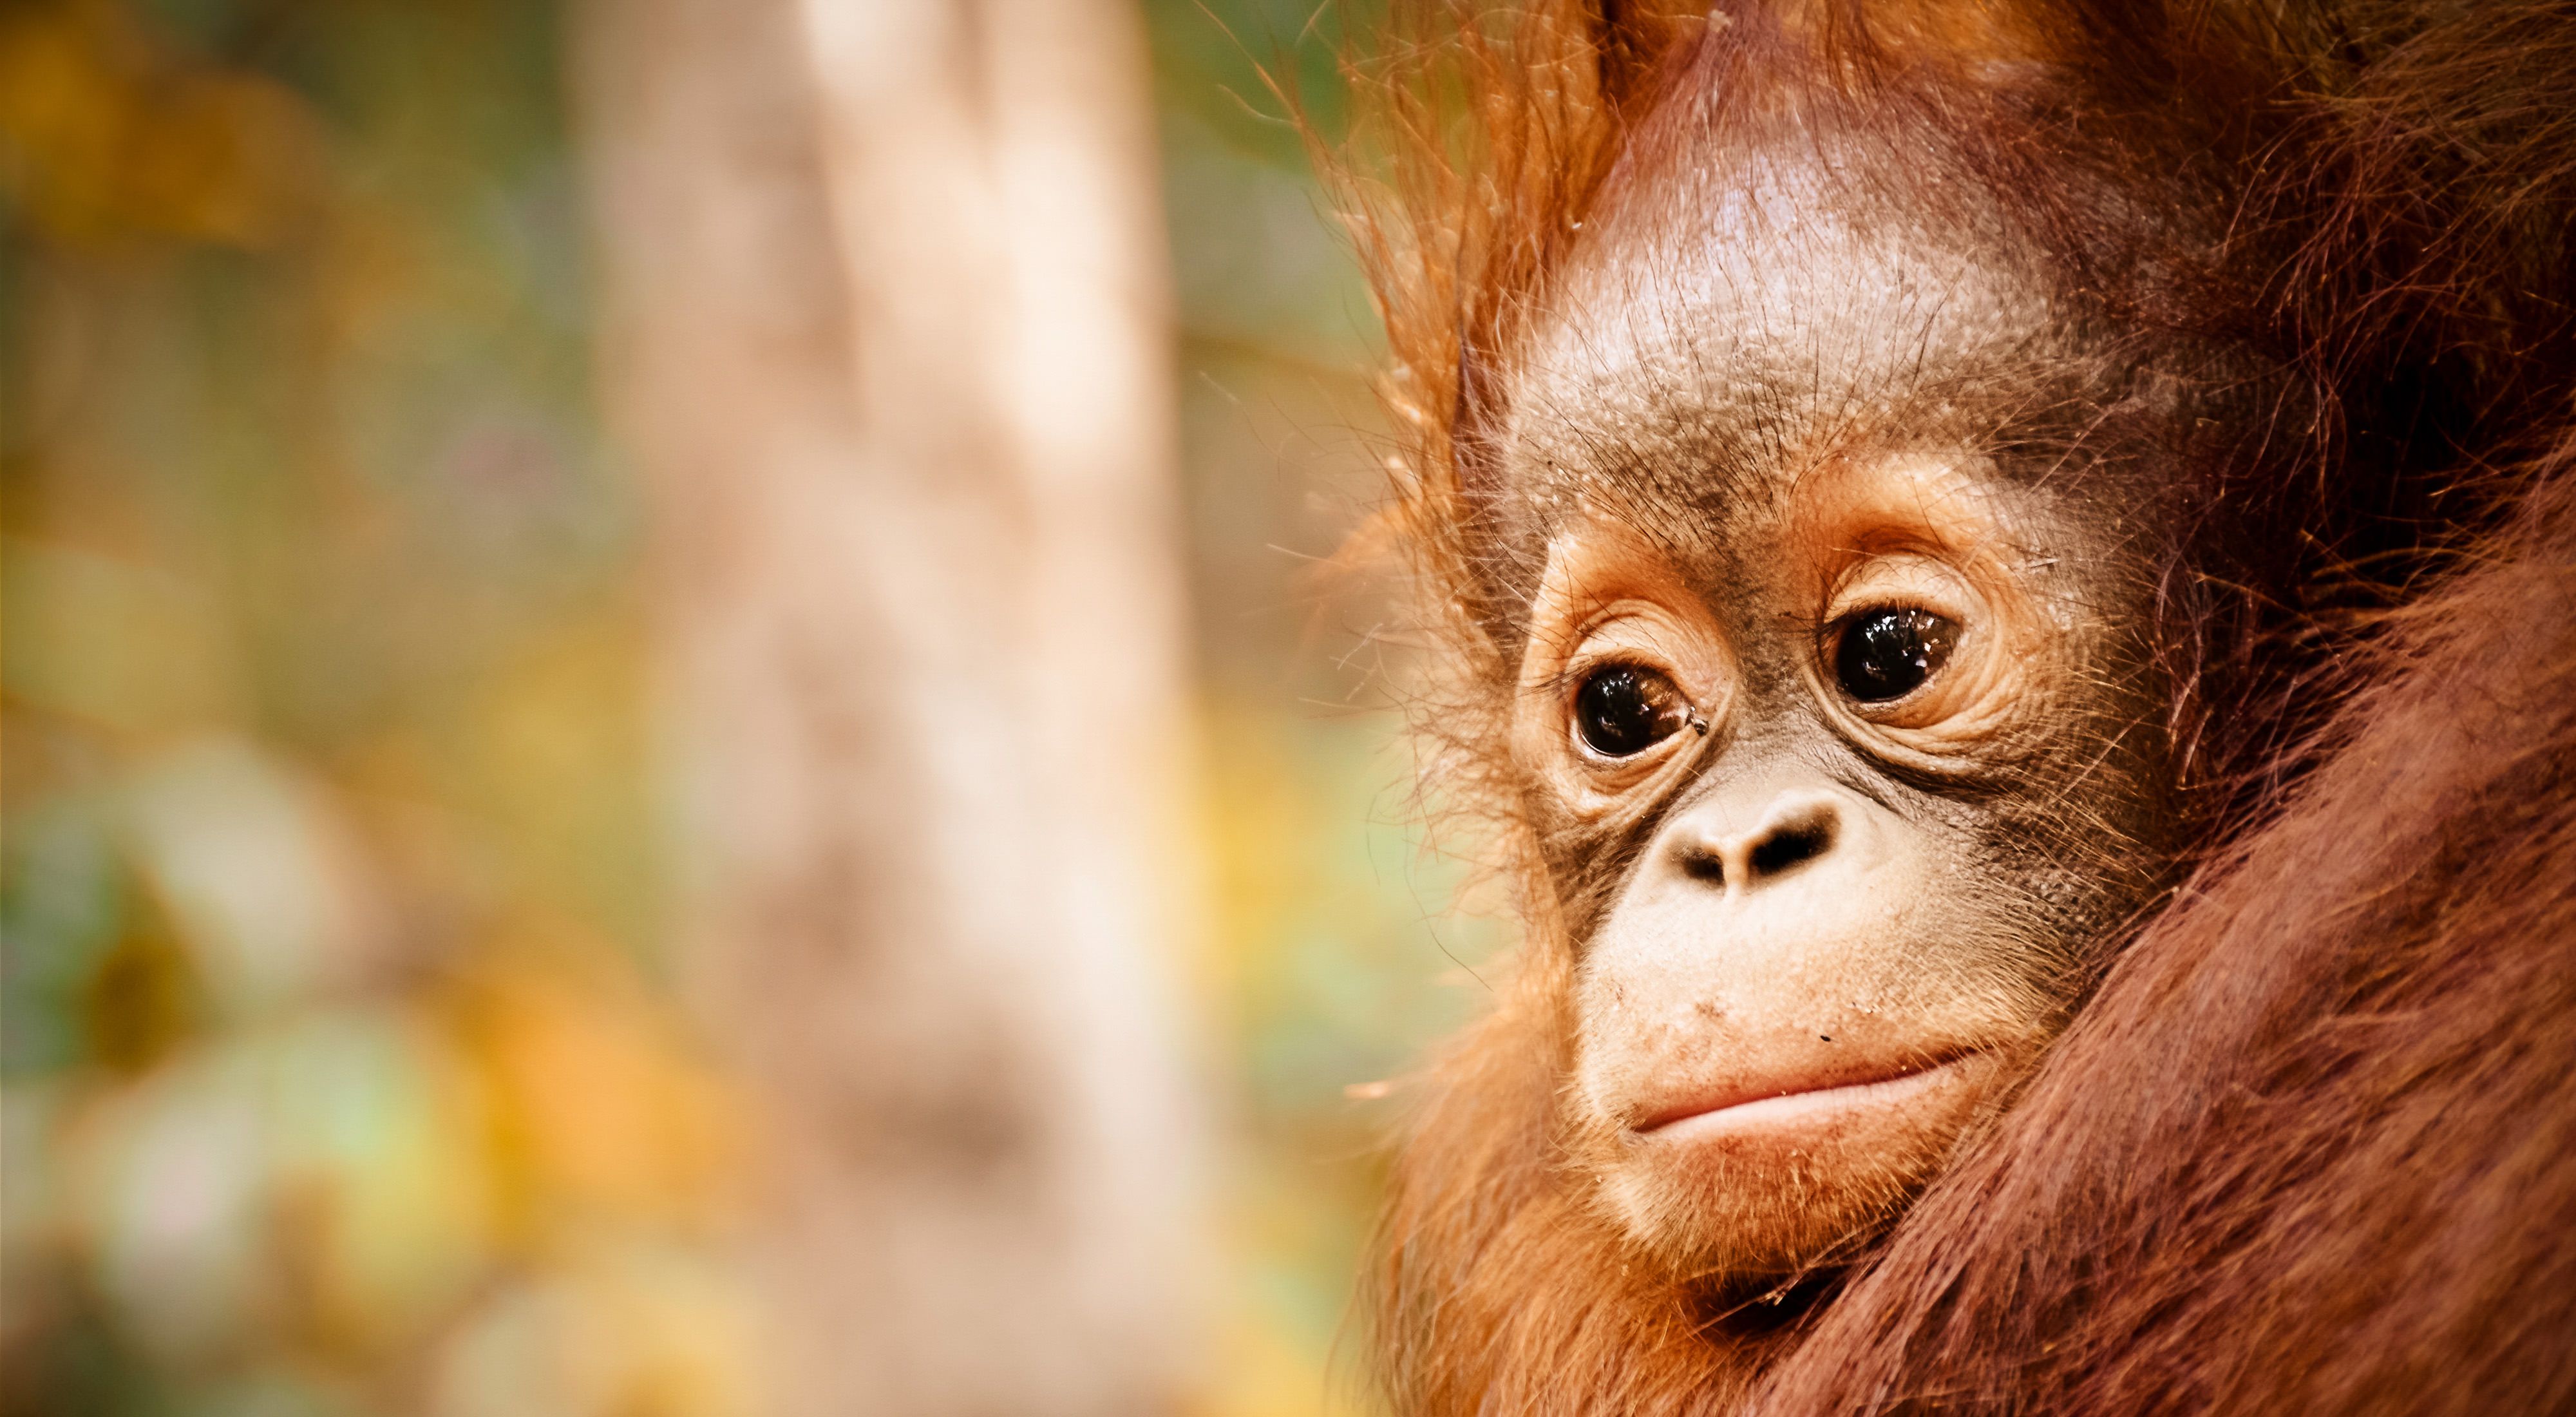 Baby orangutan close up. 